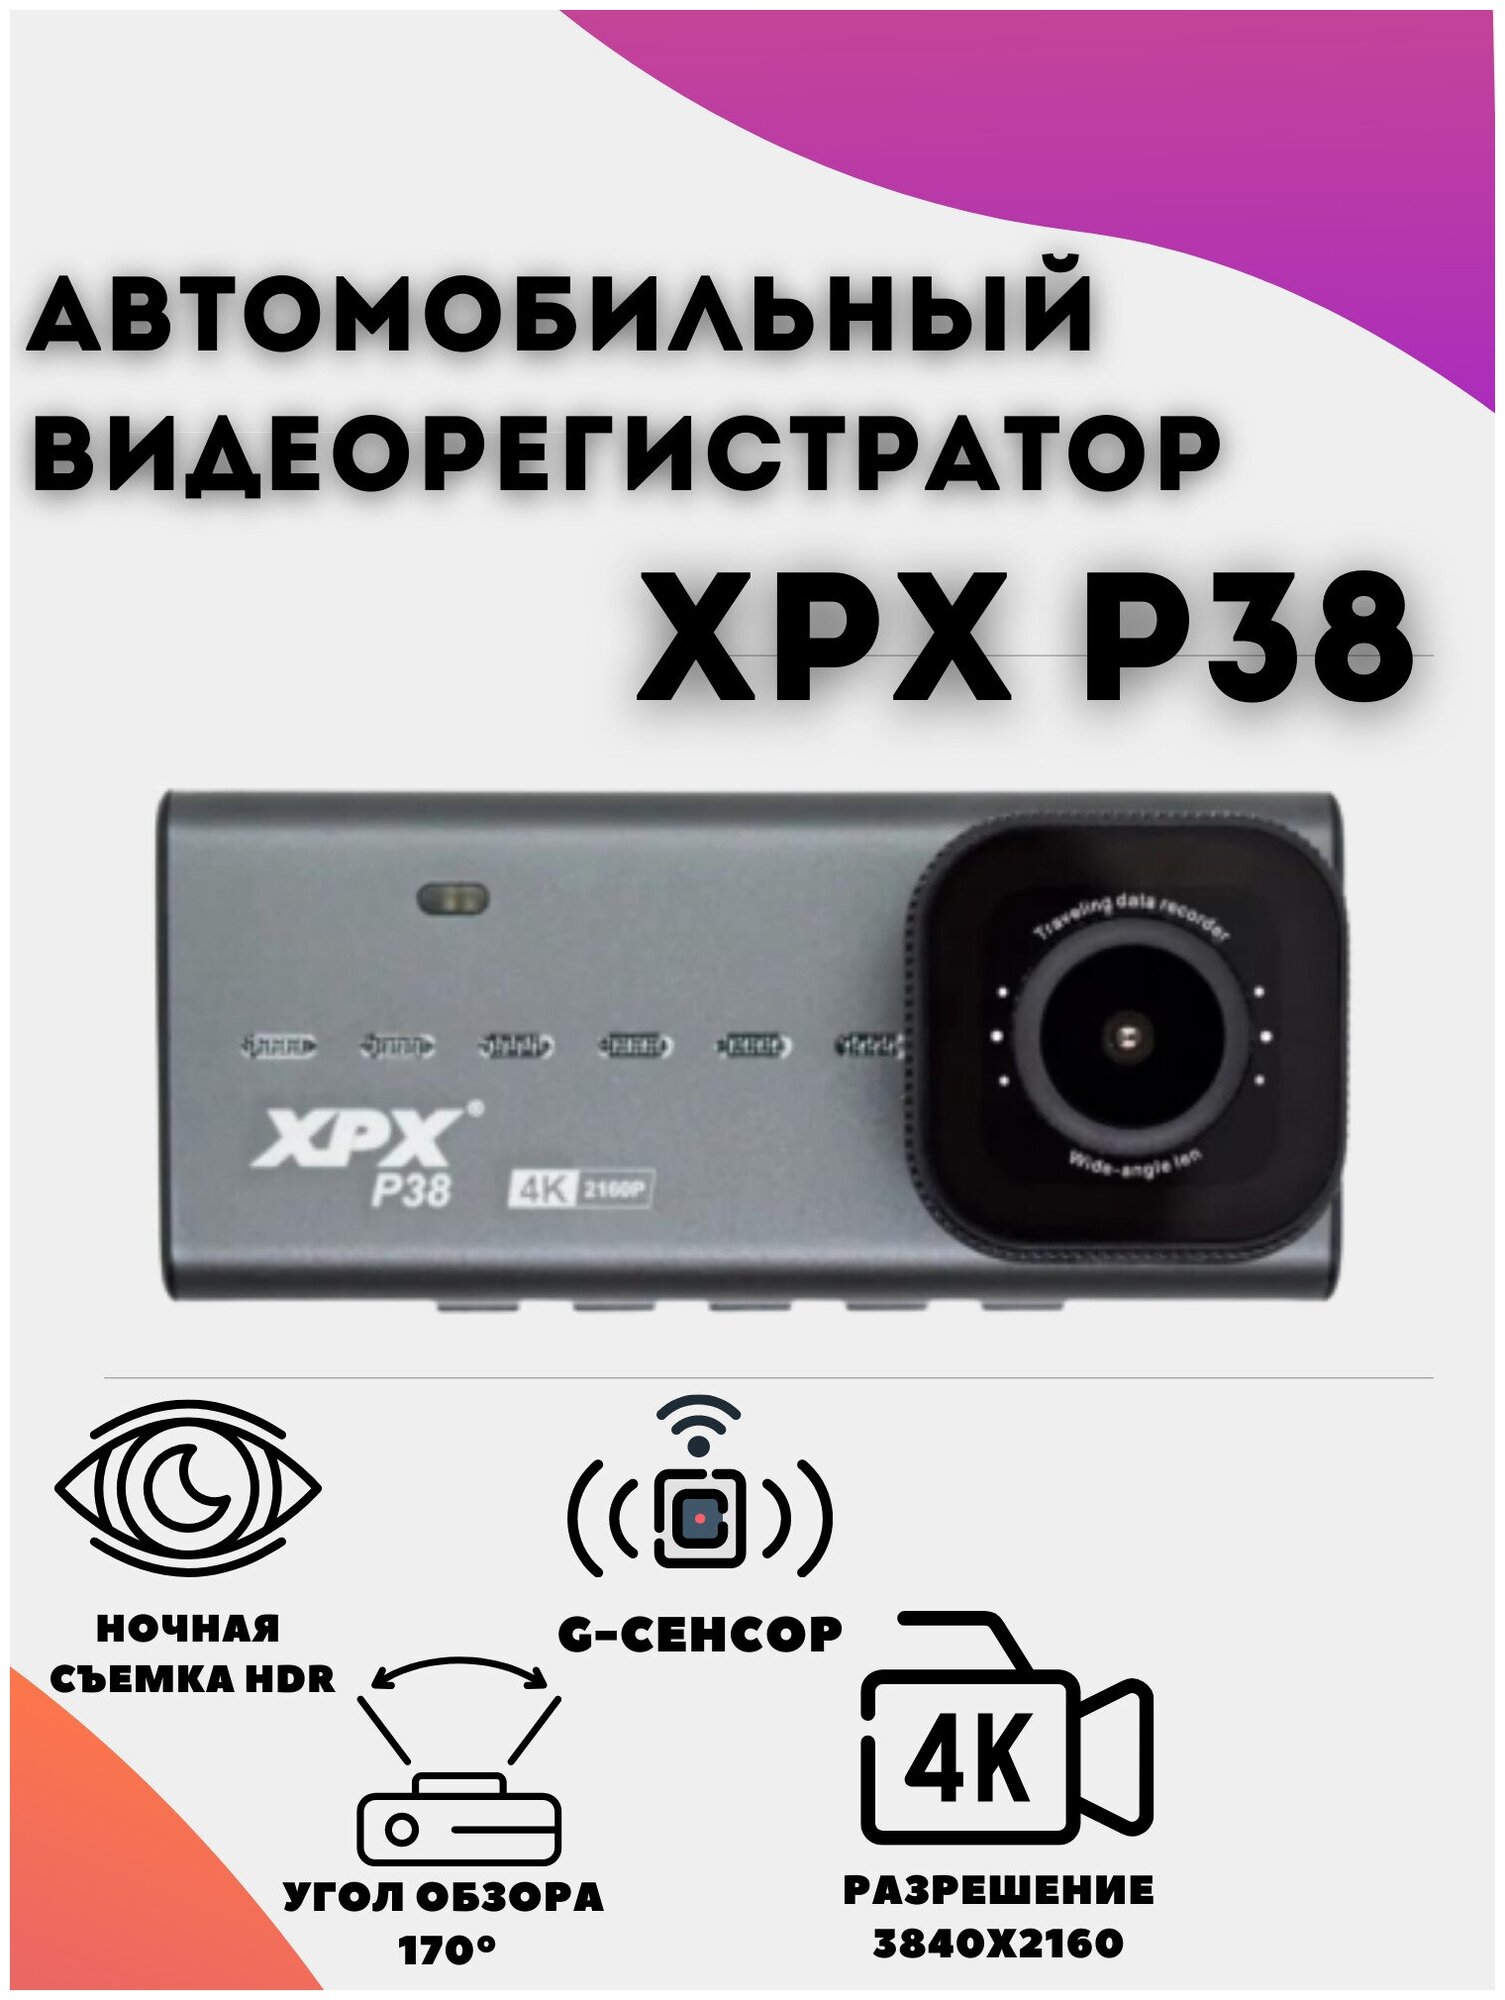 Автомобильный видеорегистратор XPX P38 / Видеорегистратор со съемкой Full HD 4K